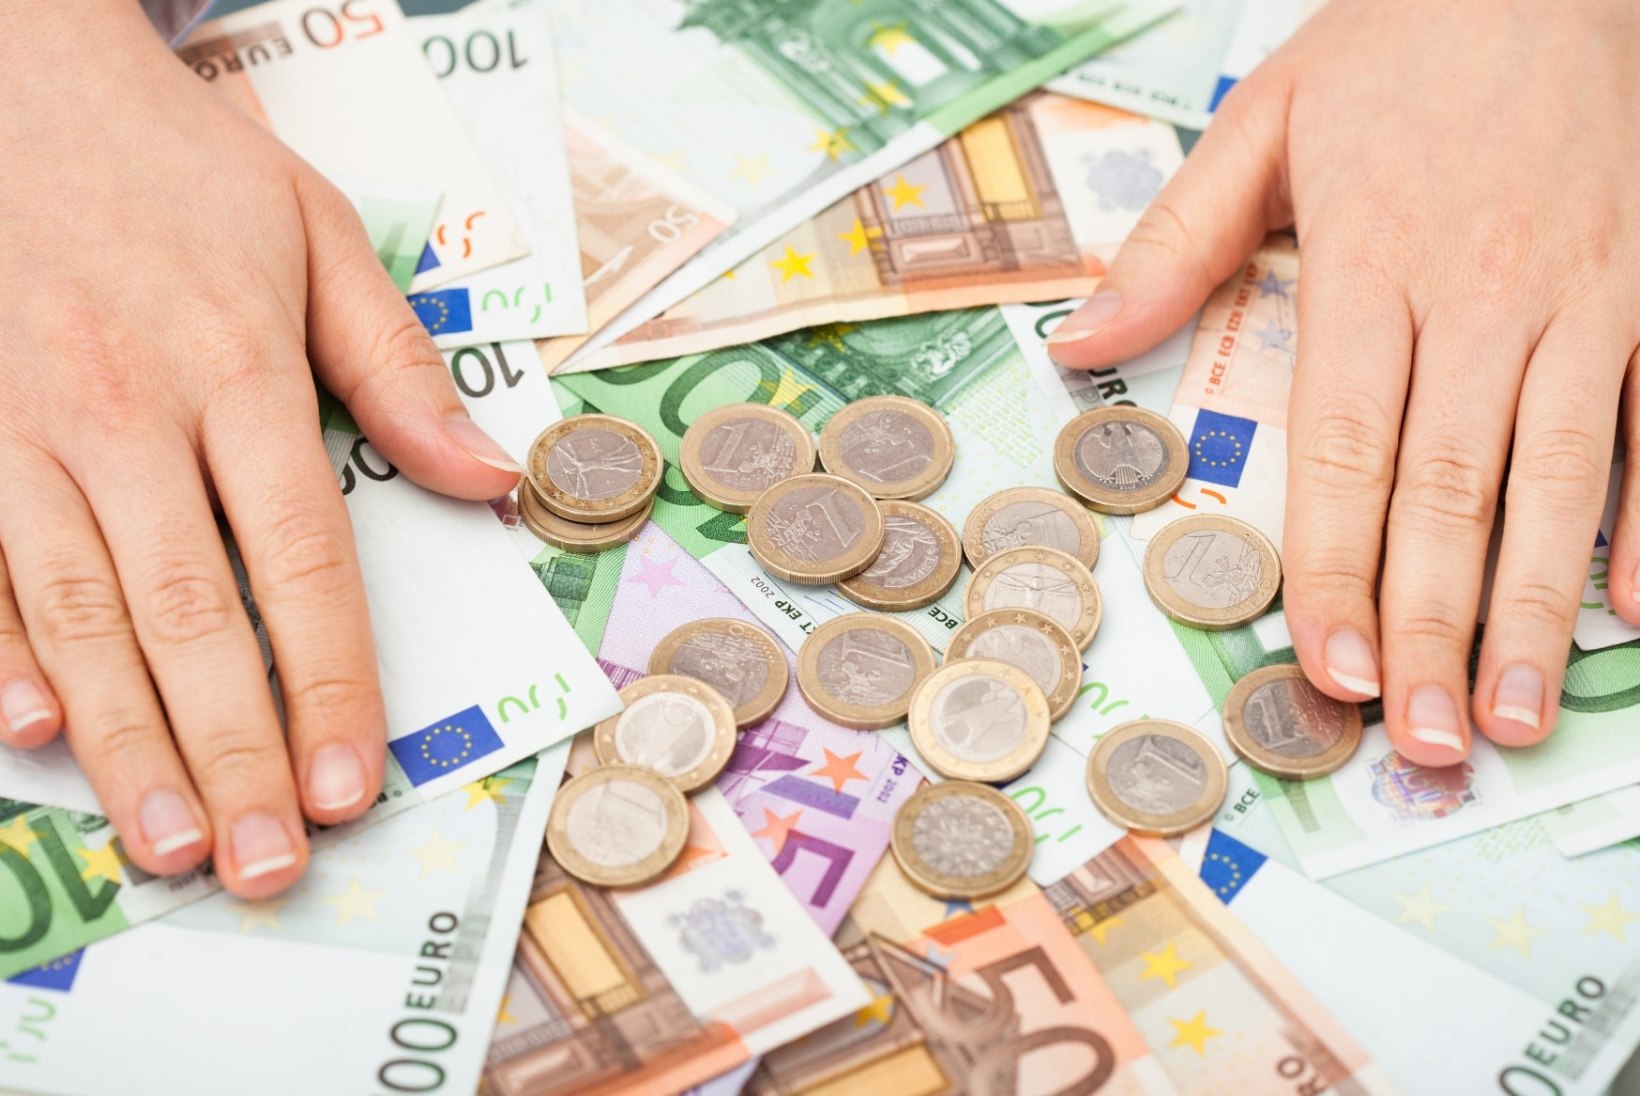 LOOSIS EESTI SUURIM JACKPOT: mida teeksid 90 miljoni euroga?